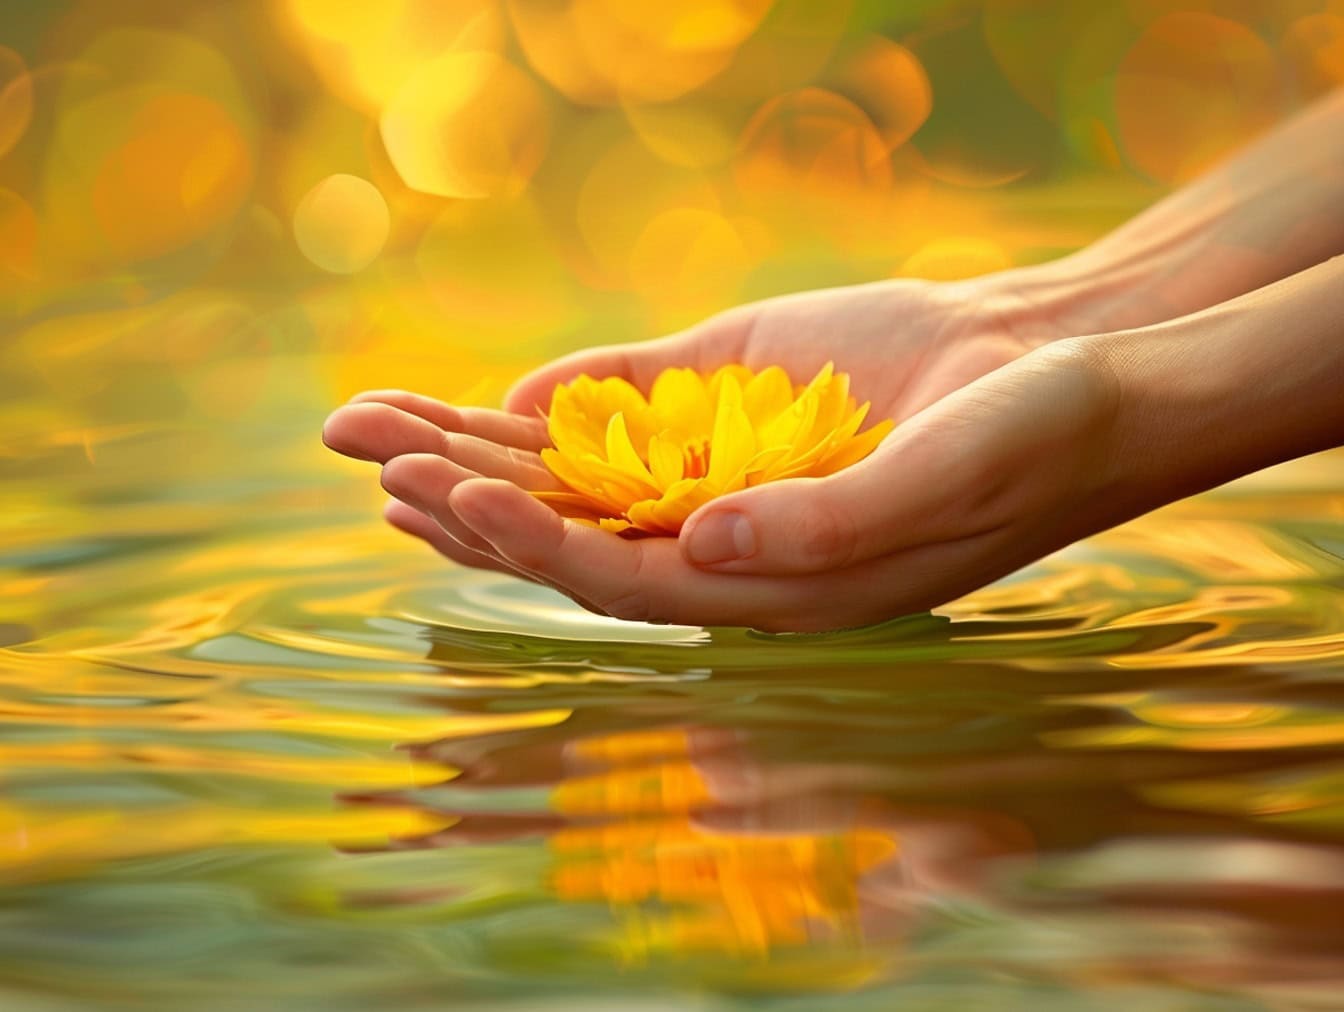 Una persona tiene in mano un fiore di loto giallo appena sopra l’acqua, illustrazione di calma e tranquillità